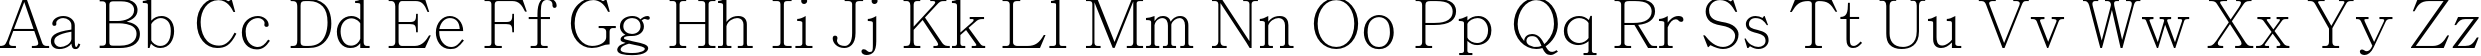 Пример написания английского алфавита шрифтом Adobe Ming Std L